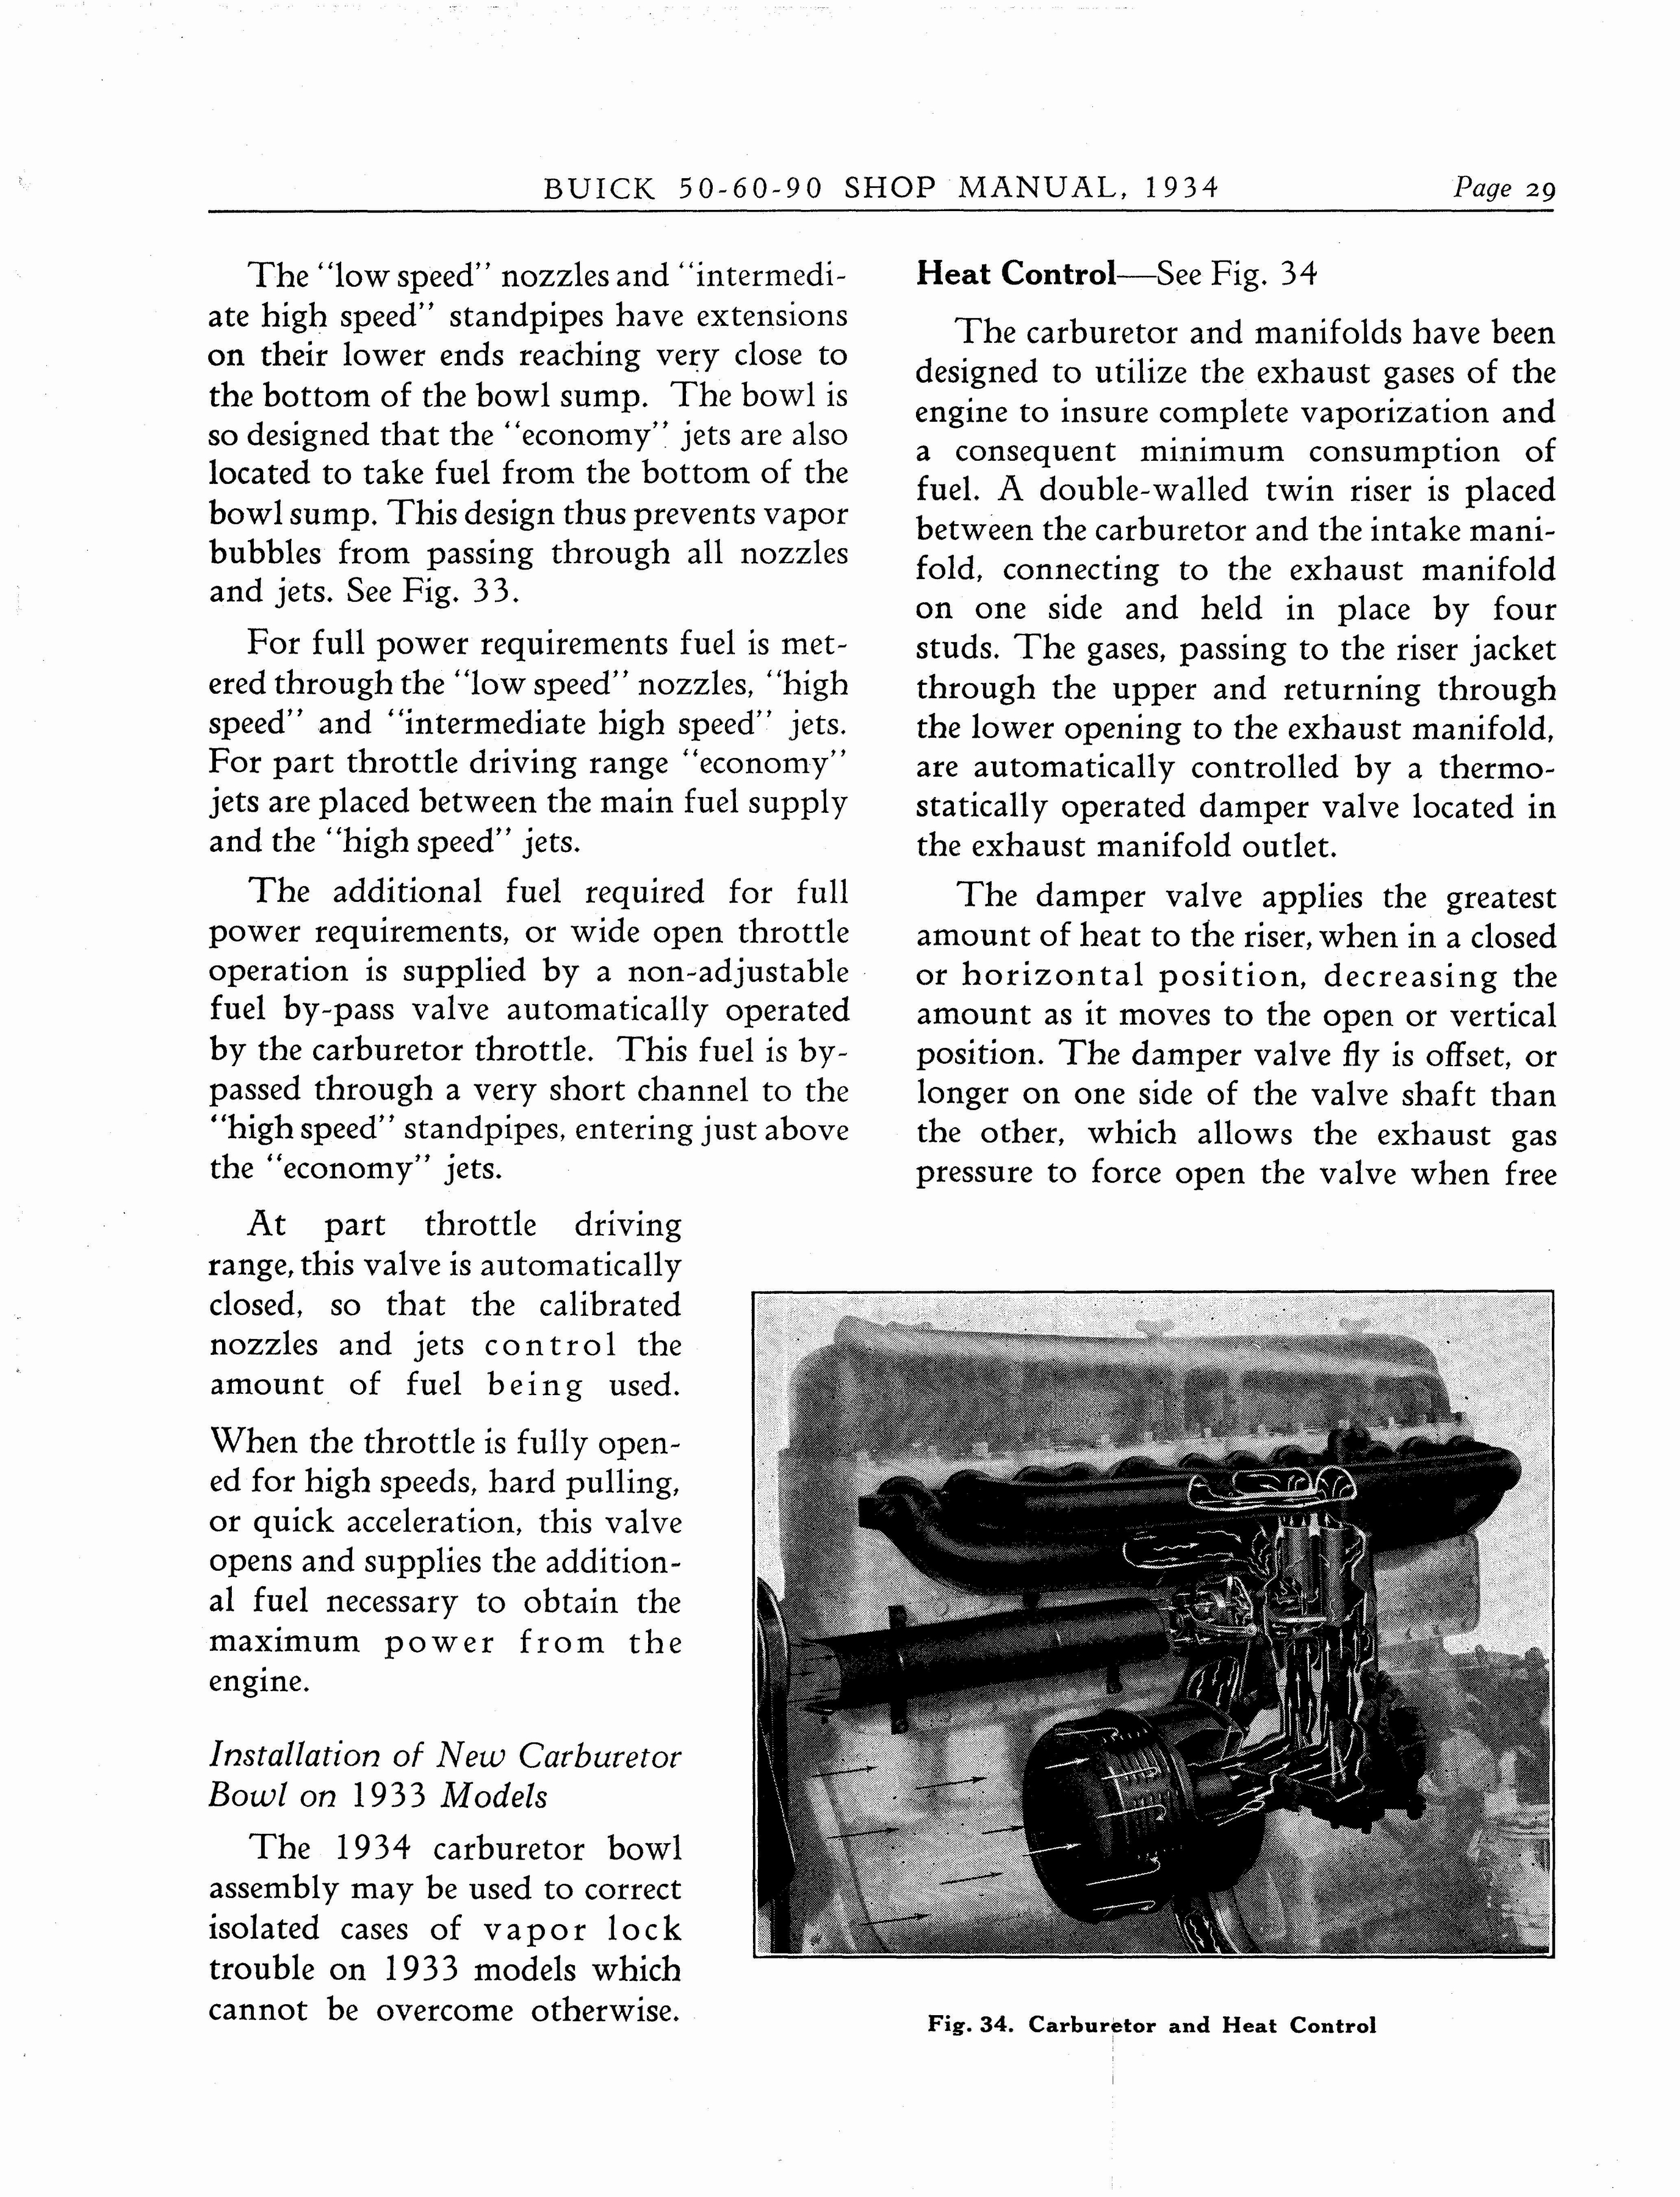 n_1934 Buick Series 50-60-90 Shop Manual_Page_030.jpg